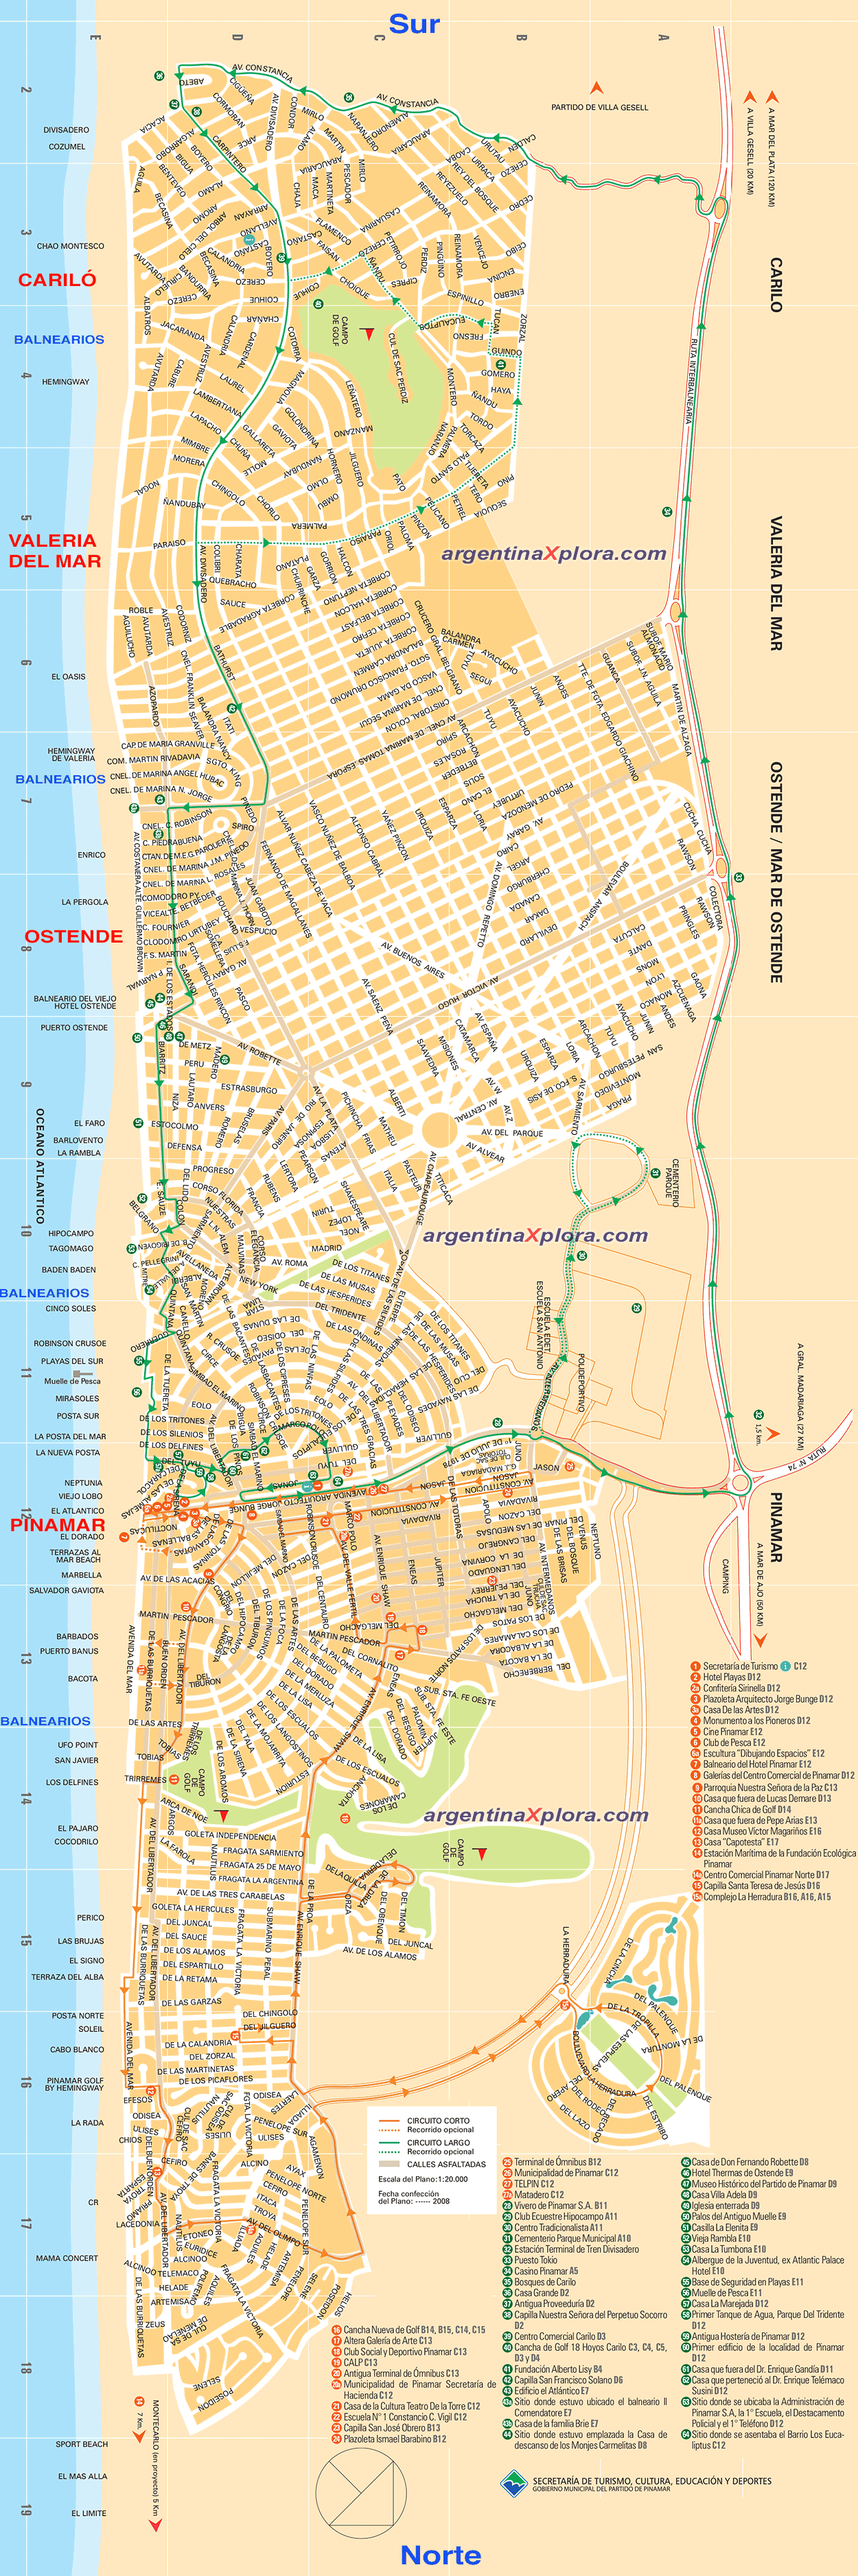 Mapa plano de la costa y calles de Pinamar - Ostende - Valeria del Mar y Cariló. Balnearios, atractivos y circuitos turísticos